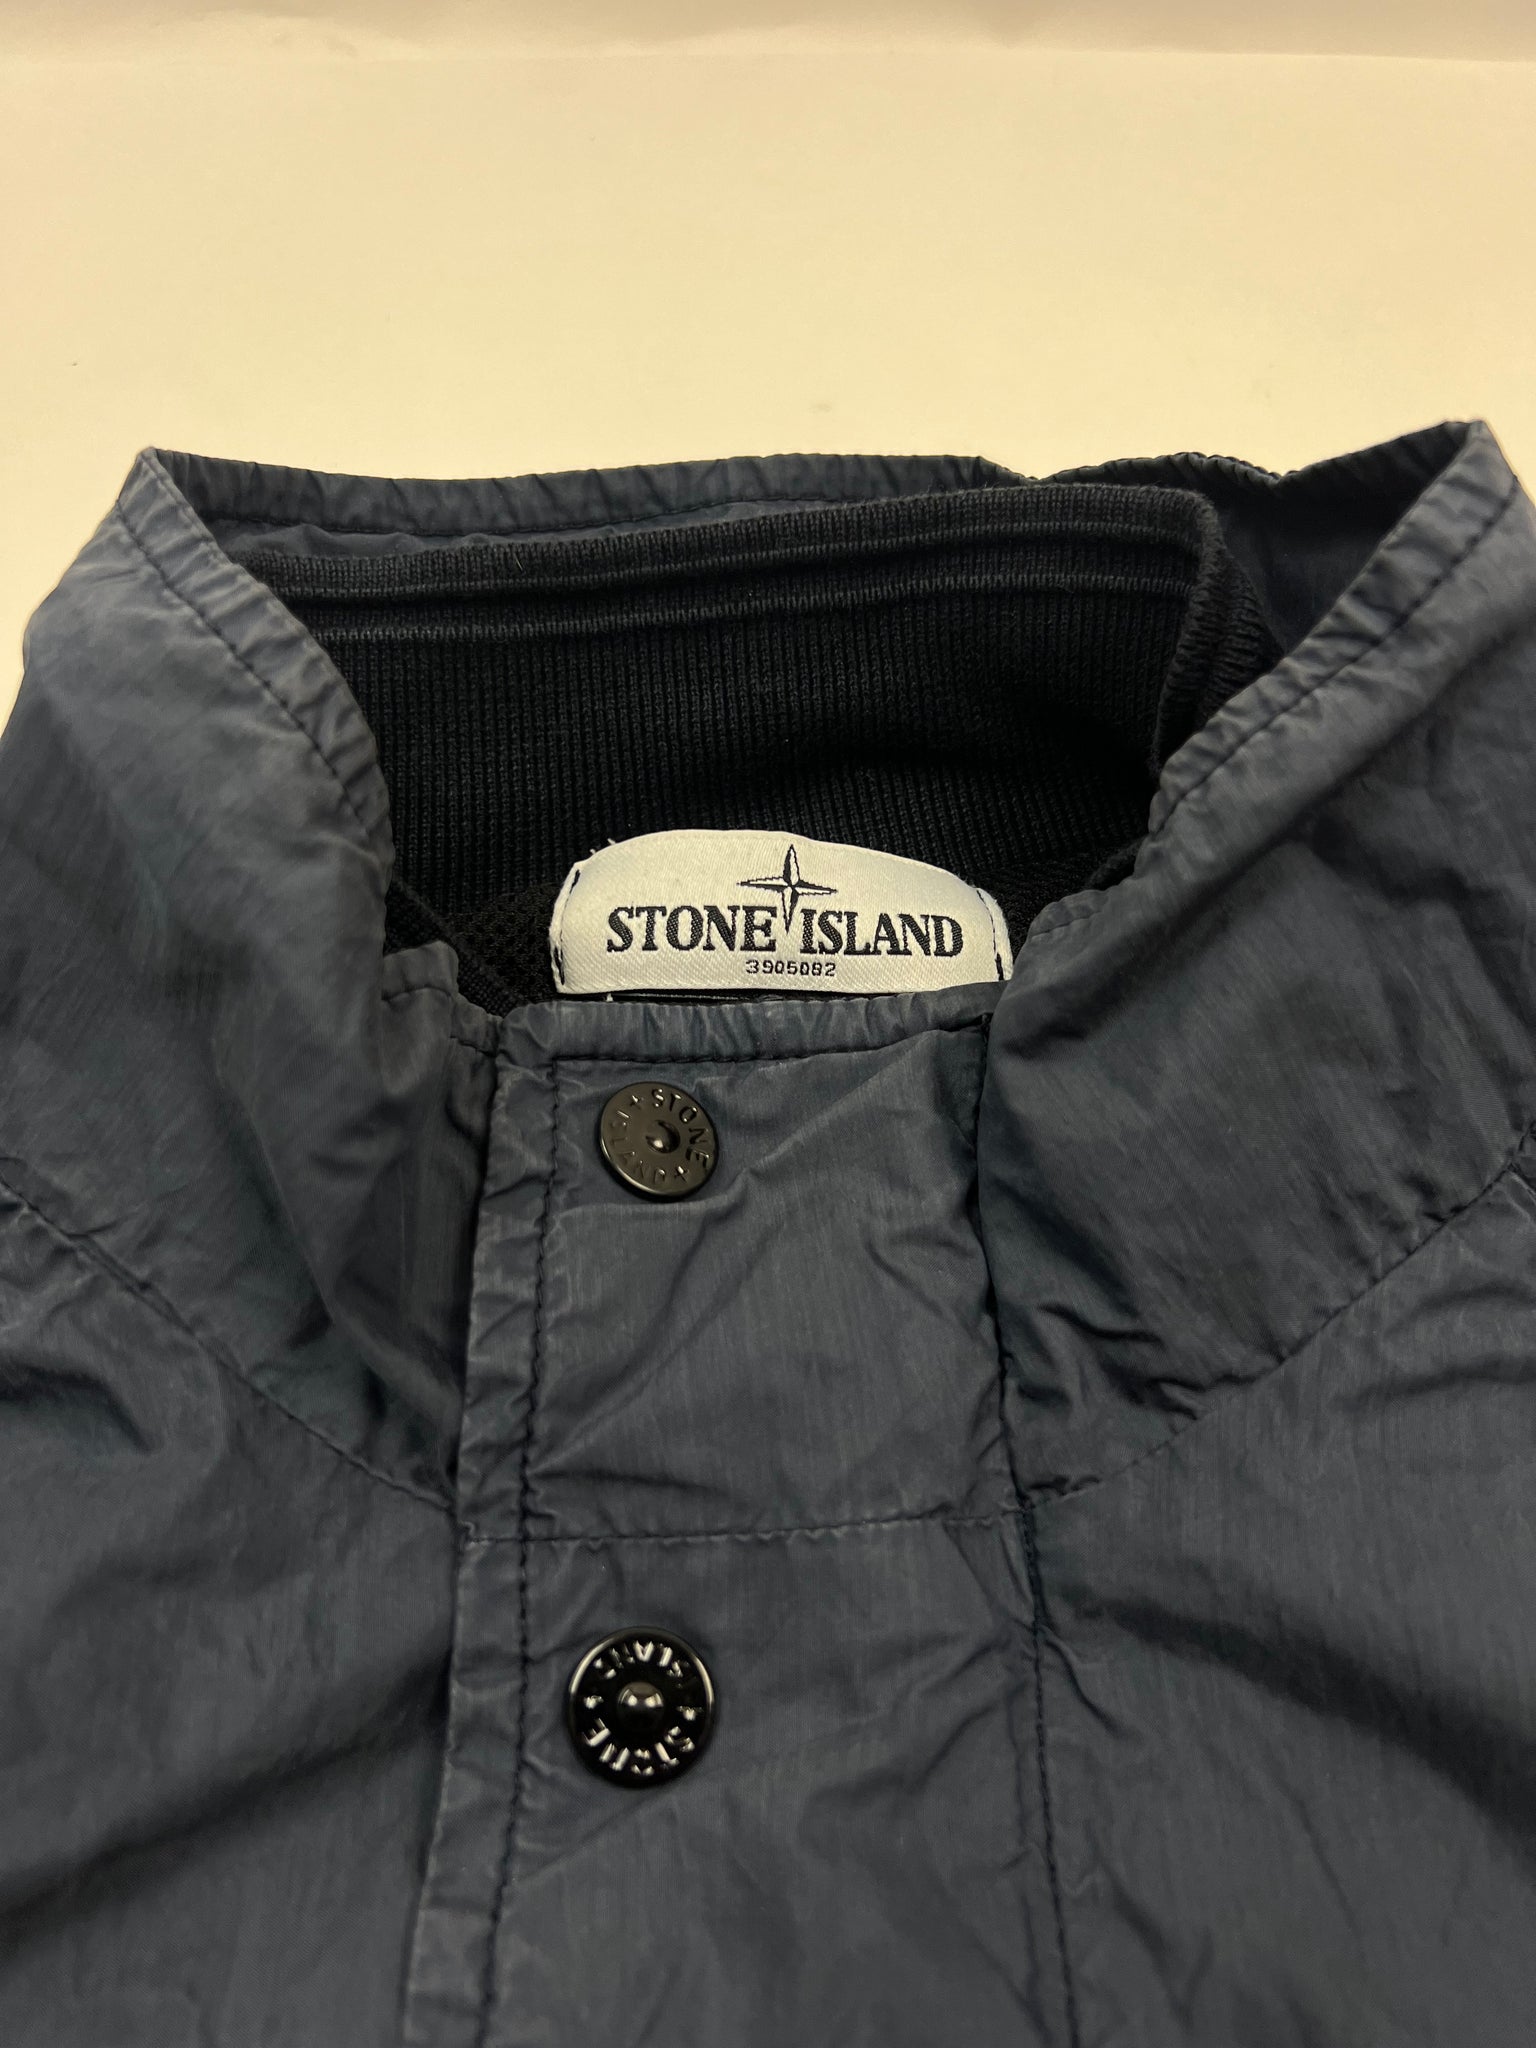 Stone Island Jacket (M)